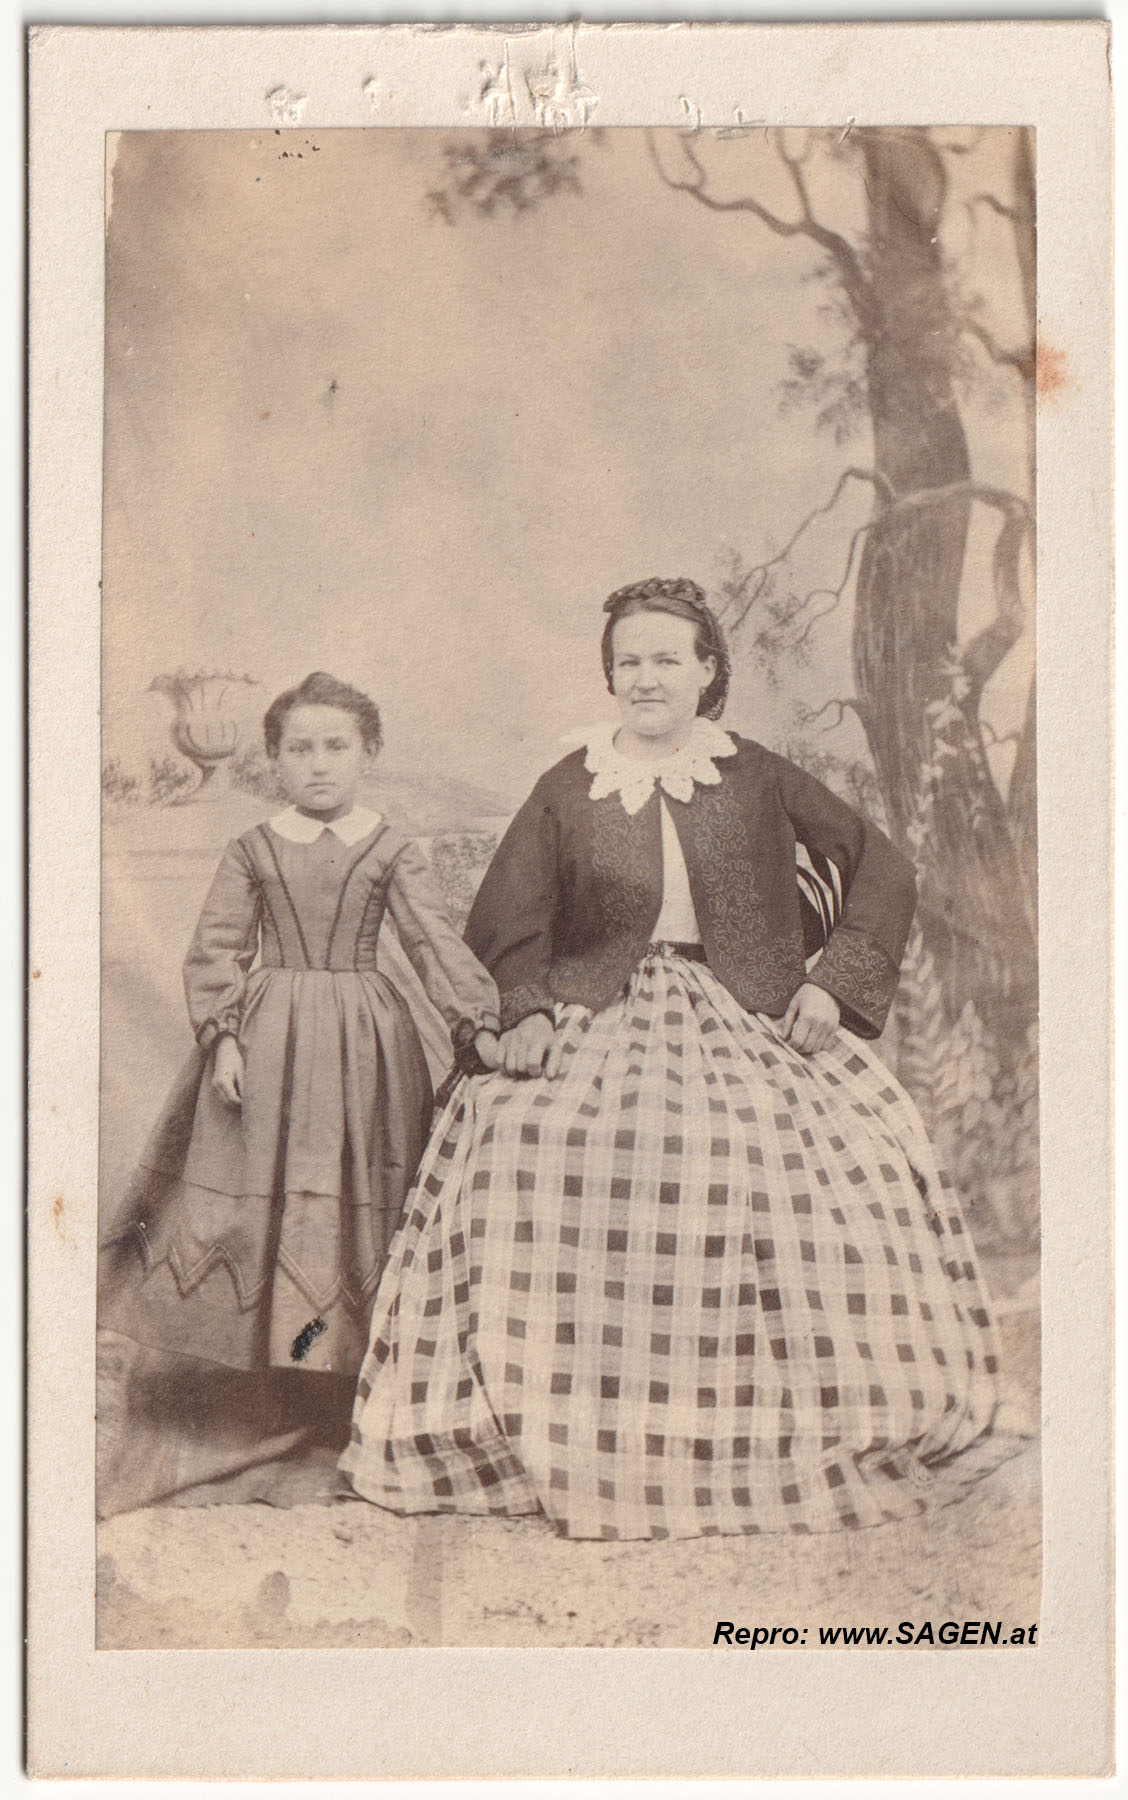 CdV Atelierporträt einer Mutter mit ihrer Tochter, 1860er Jahre